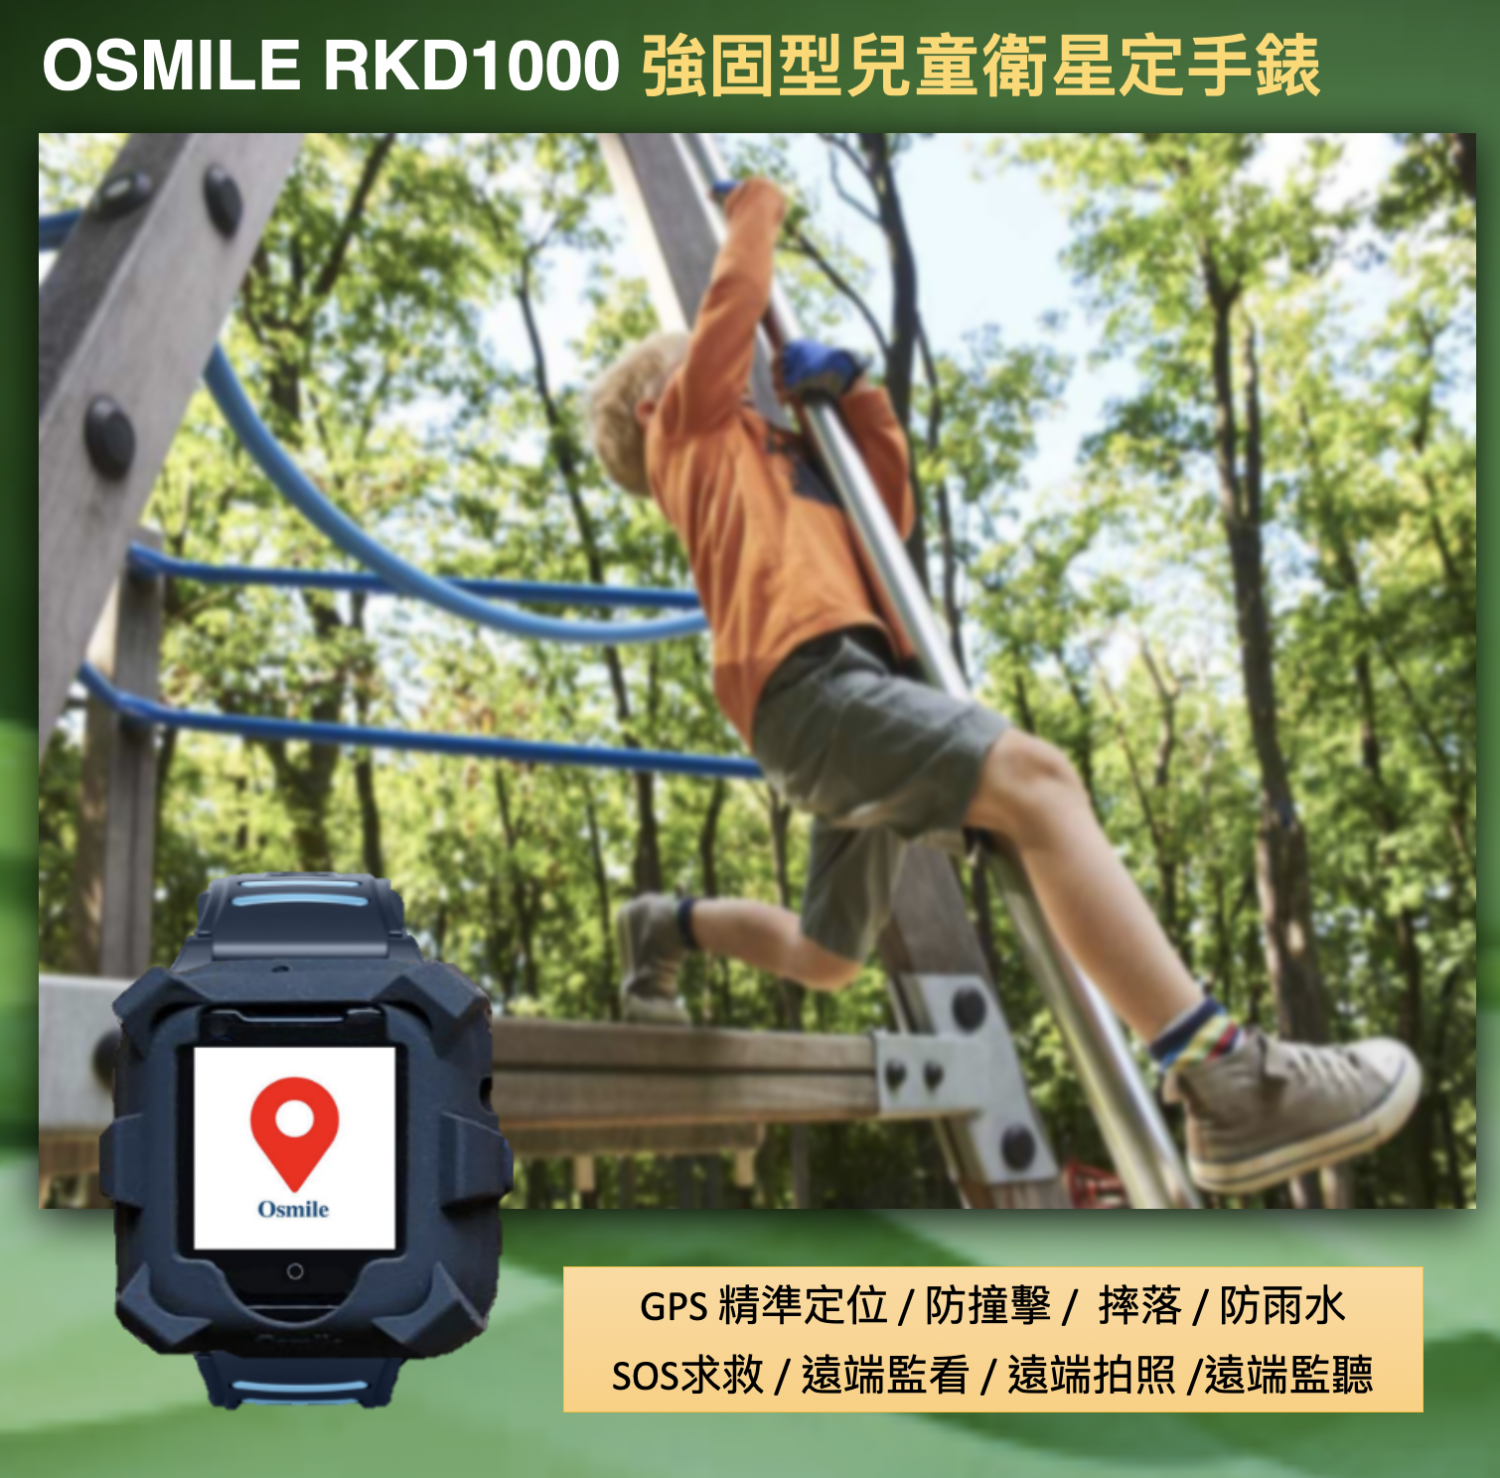 Osmile RKD1000 (L) 兒童智能安全定位求救手錶 (強固型外殼設計)